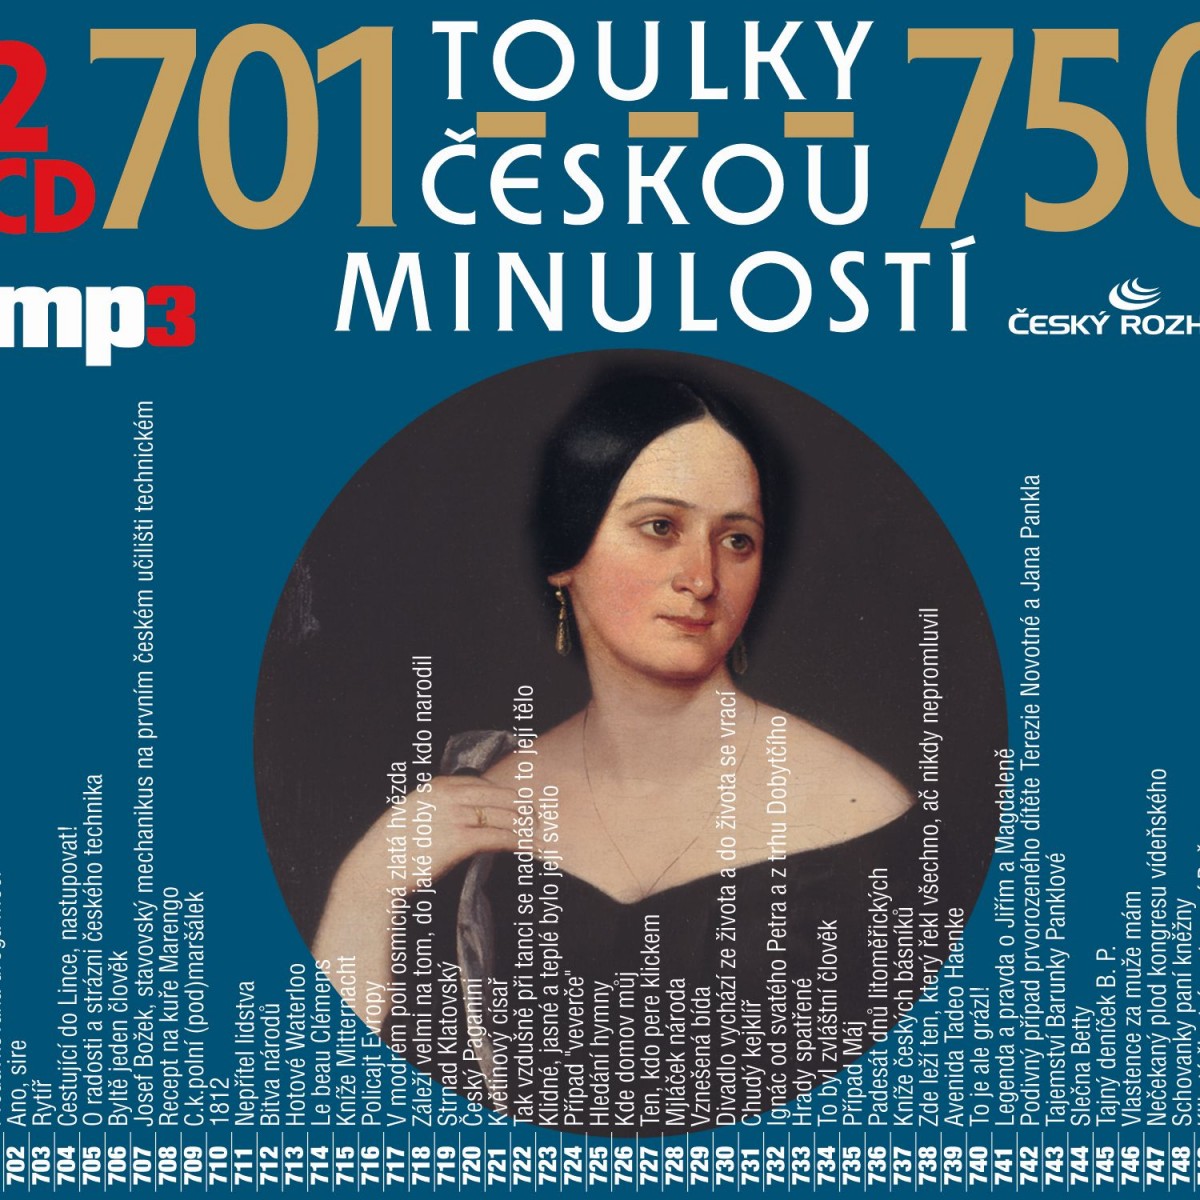 Toulky českou minulostí 701-750 (MP3-CD)